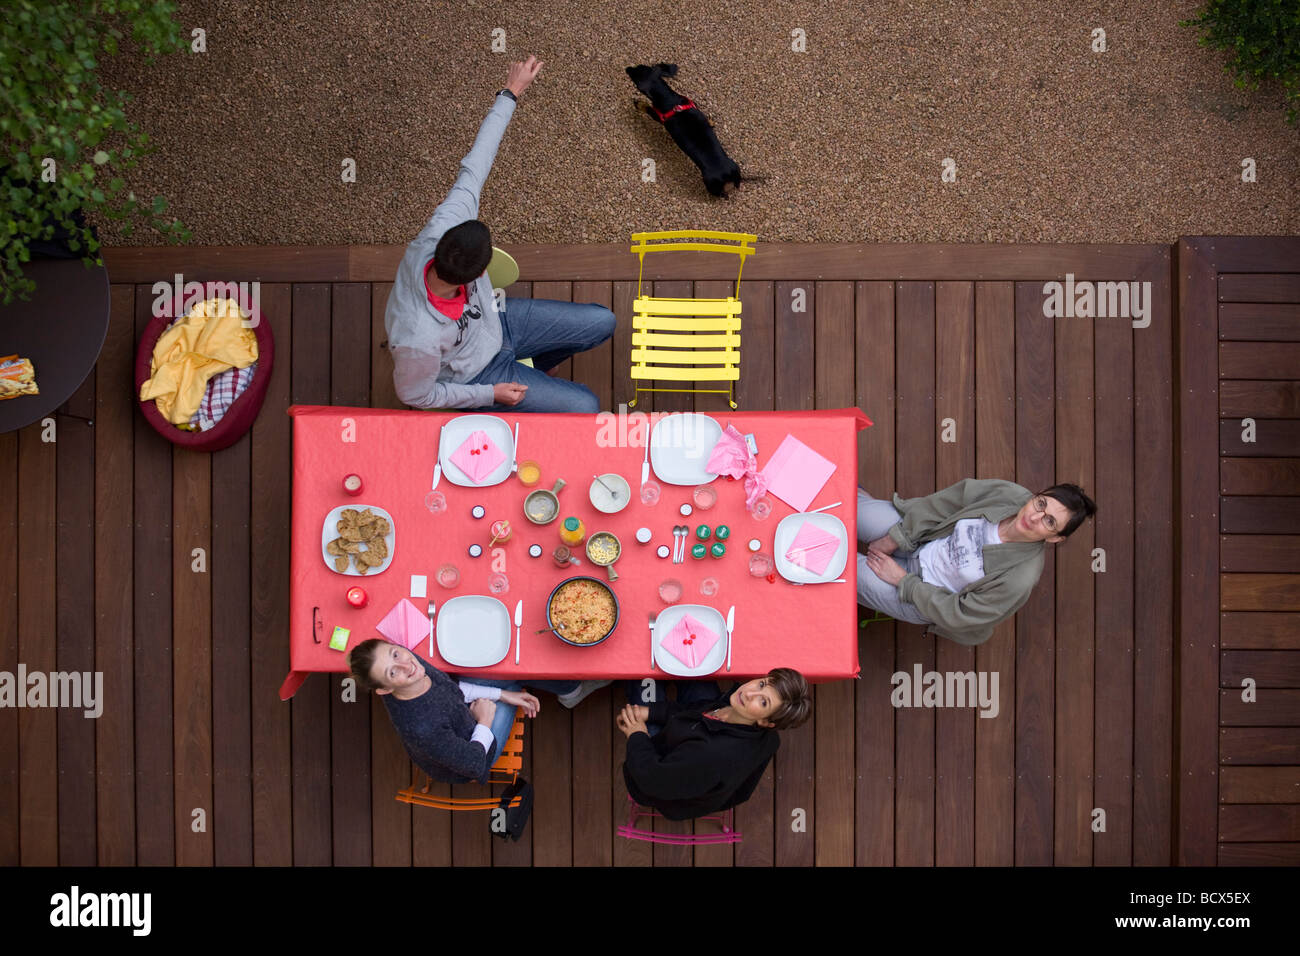 Les amis de dîner sur une terrasse en ipé (Tabebuia sp). Dîner entre amis sur une terrasse en ipé (Tabebuia sp). Banque D'Images